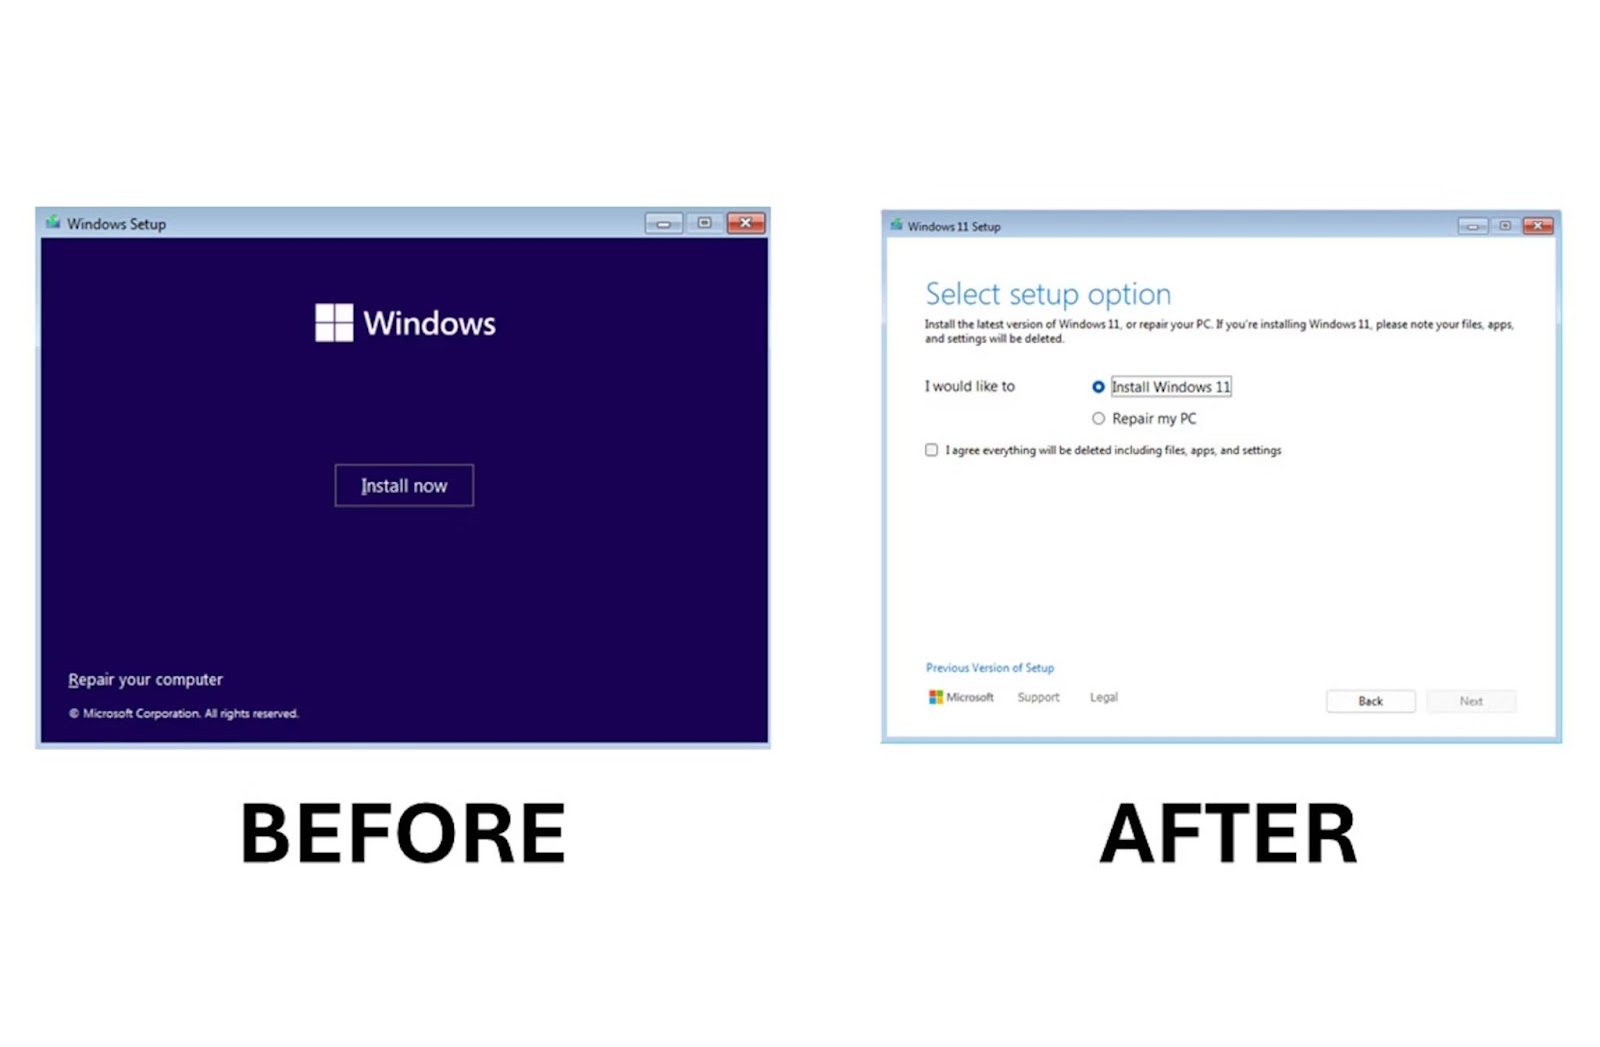 Nhàn như nhà thiết kế tại Microsoft: sử dụng giao diện 10 năm tuổi để làm giao diện cài đặt “mới” cho Windows 11- Ảnh 2.